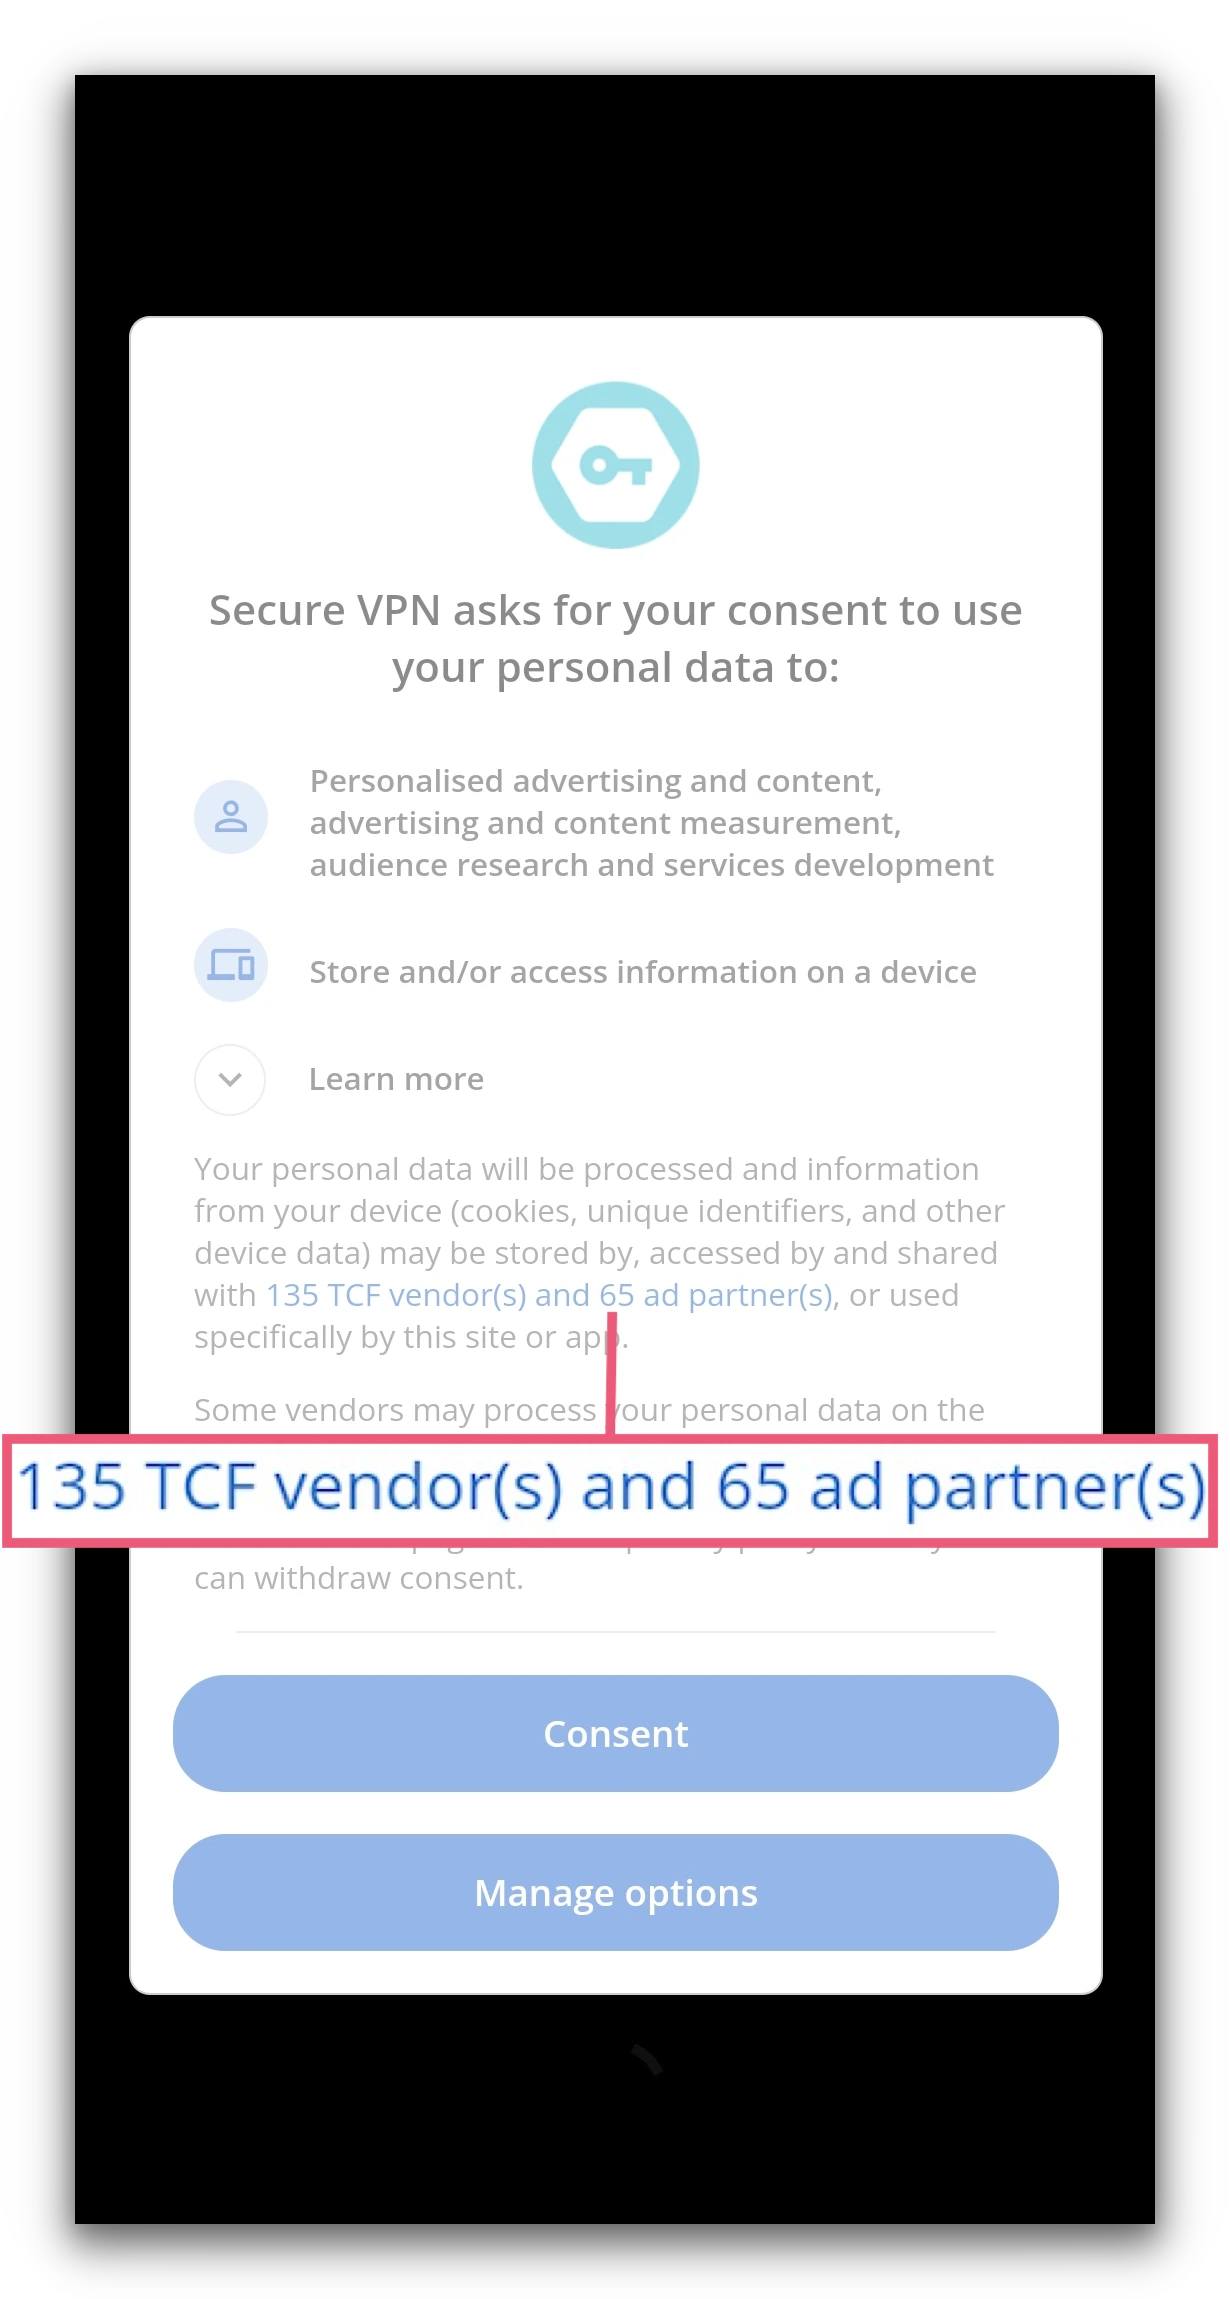 Secure VPN's data-sharing disclaimer